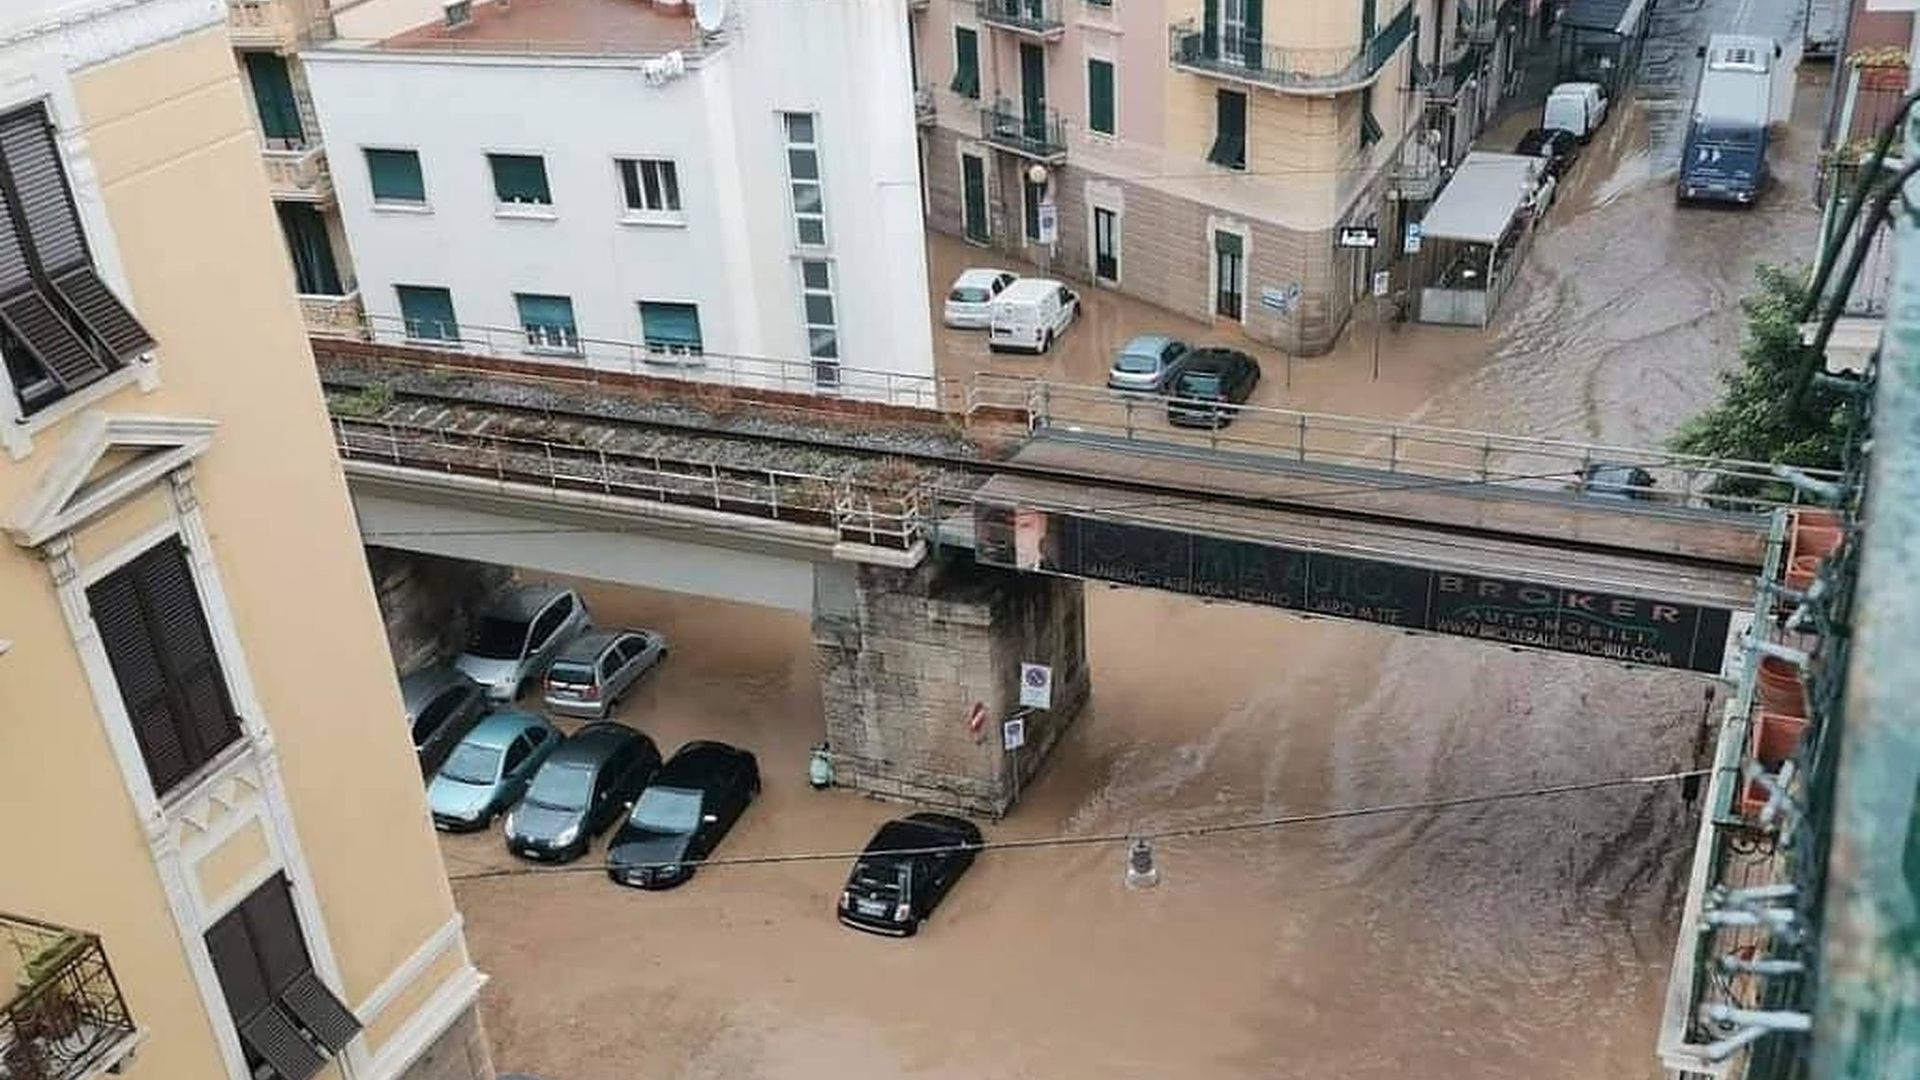 Floods in Liguria Region, Italy, 04 October 2021. 